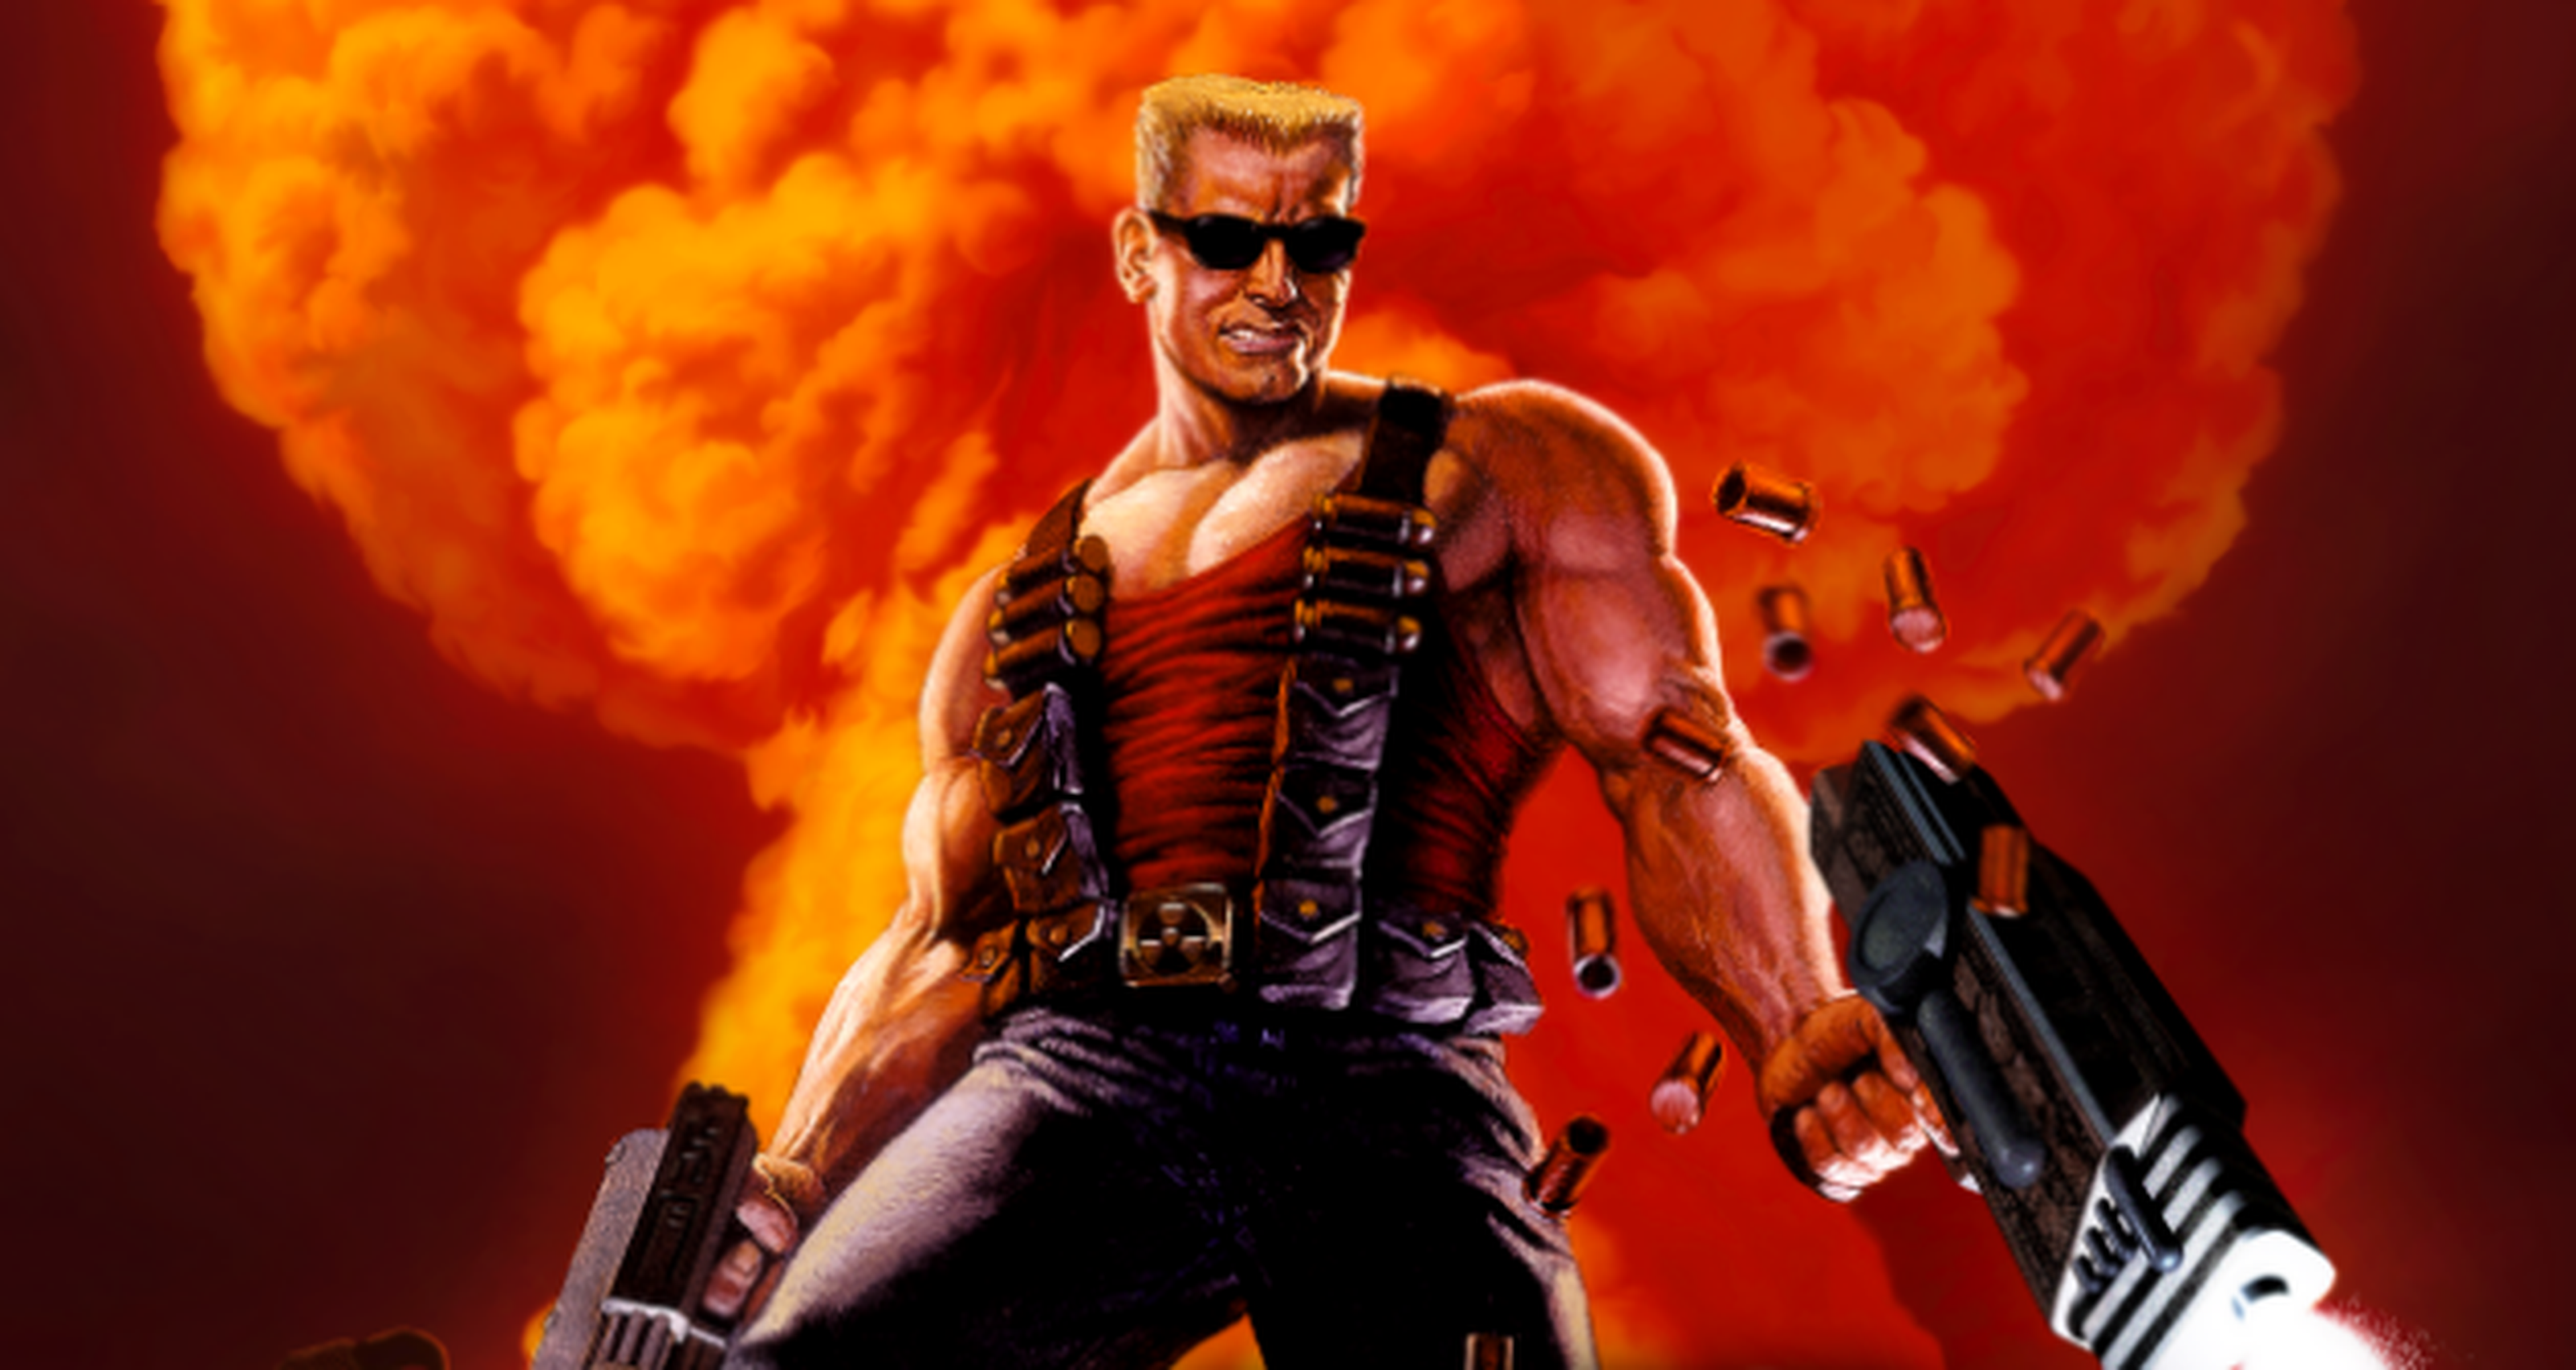 Duke Nukem 3D para Mega Drive saldrá en todo el mundo 17 años después